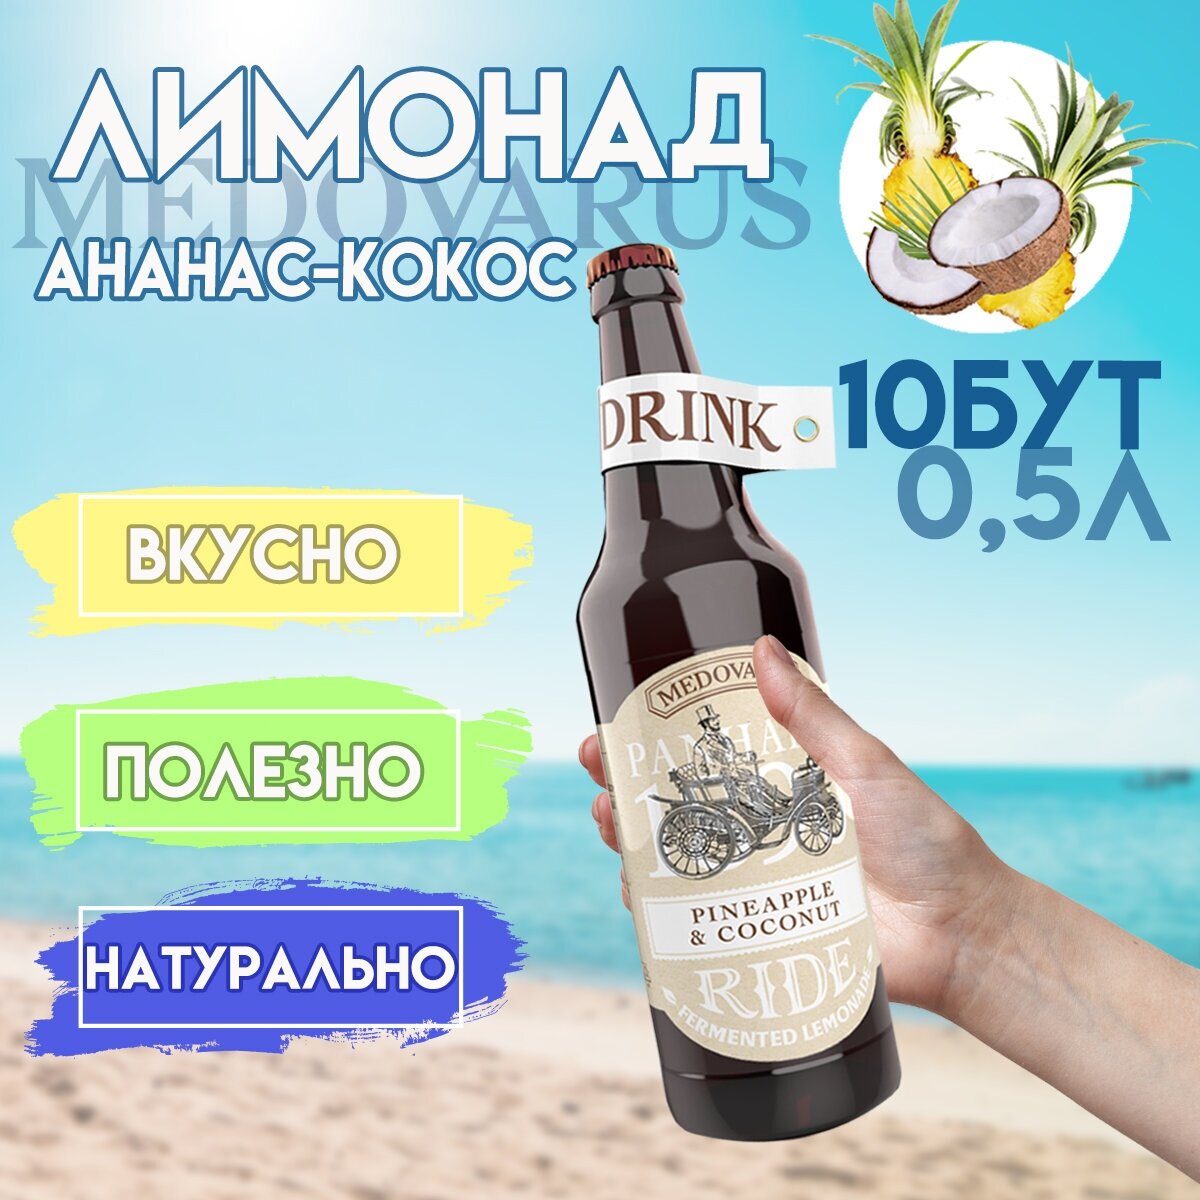 Лимонад Медоварус "Ананас-Кокос" RIDE от Медоварус, 10бут по 0,5л